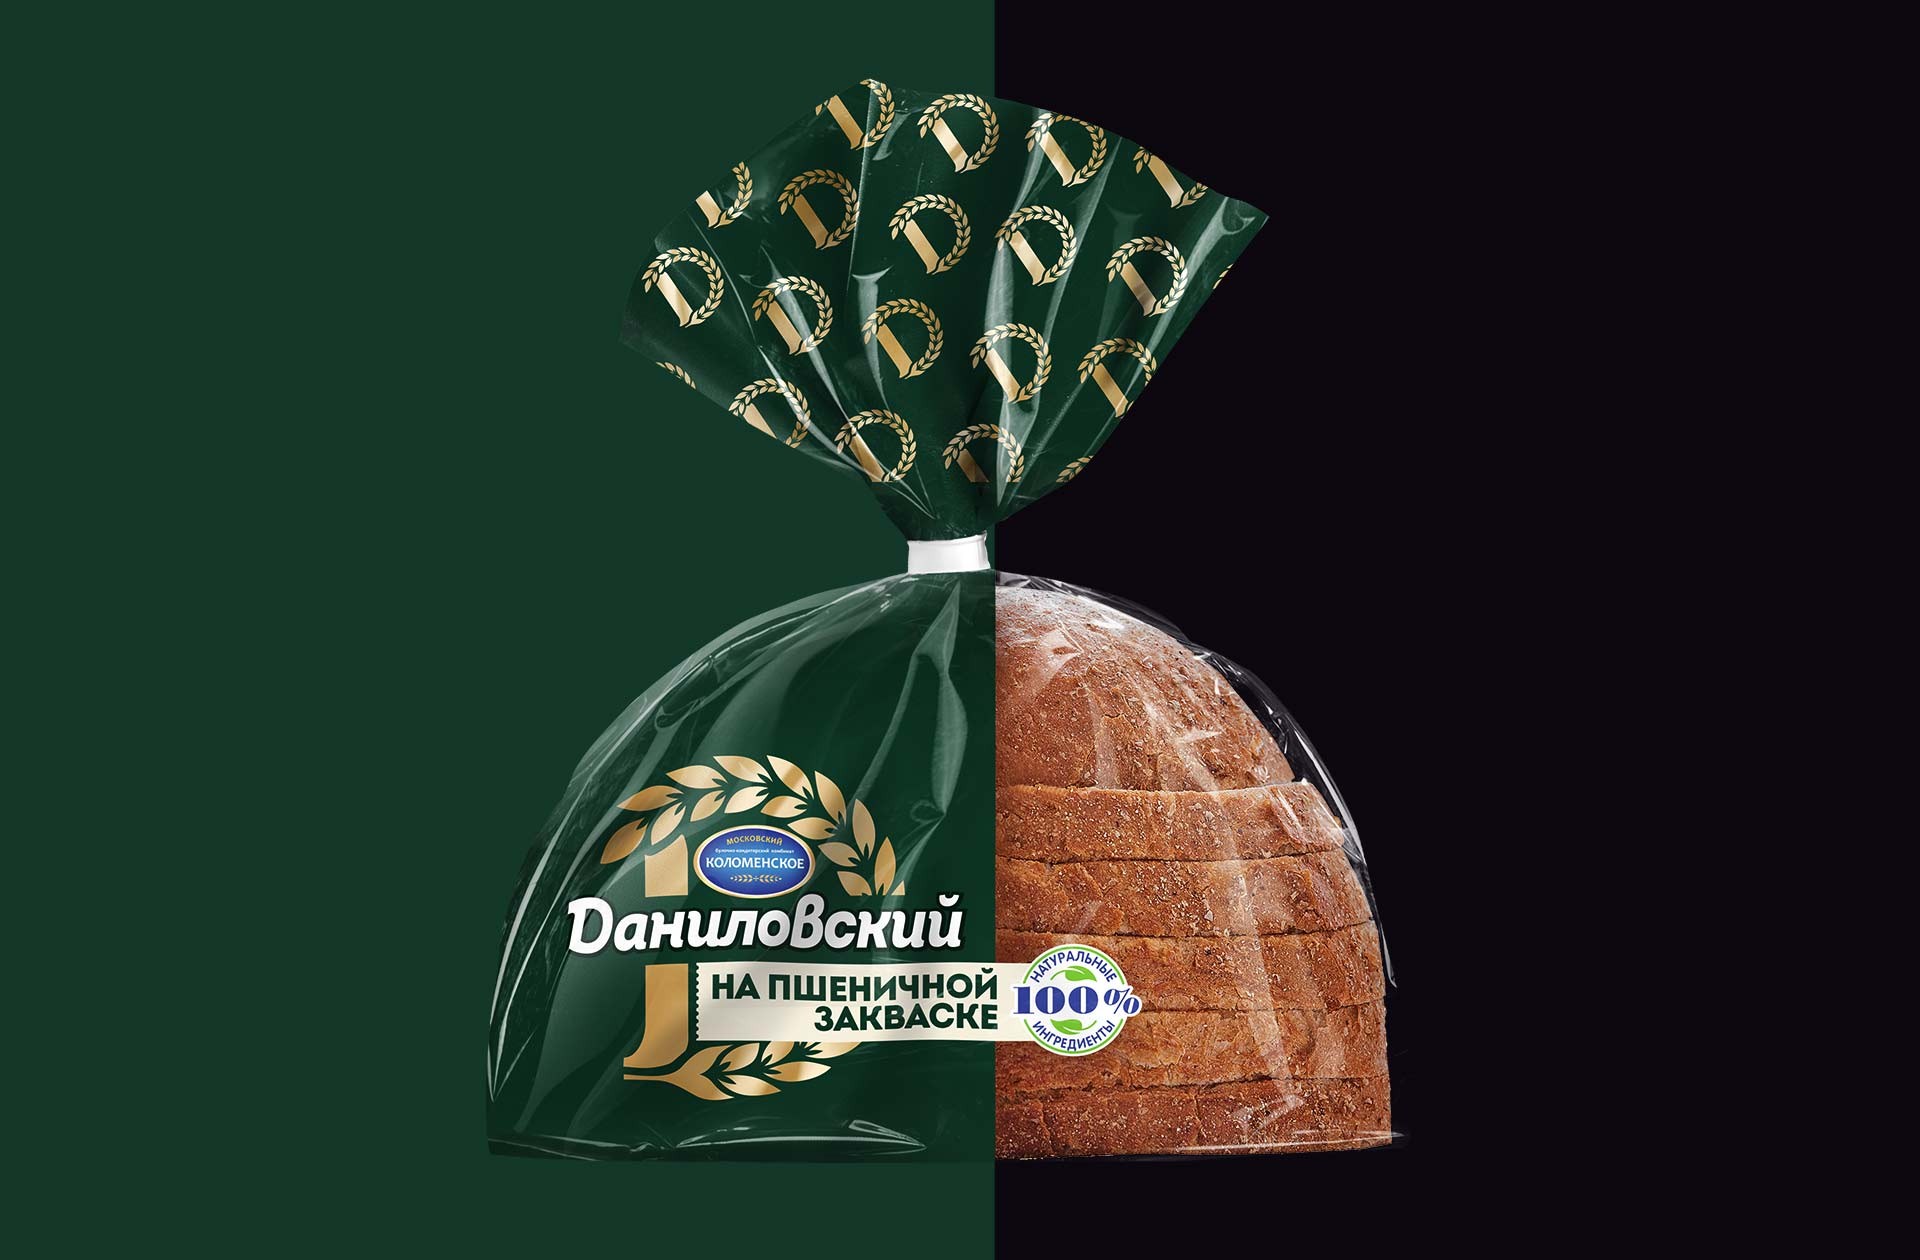 Даниловский хлеб зерновой 300 Коломенский